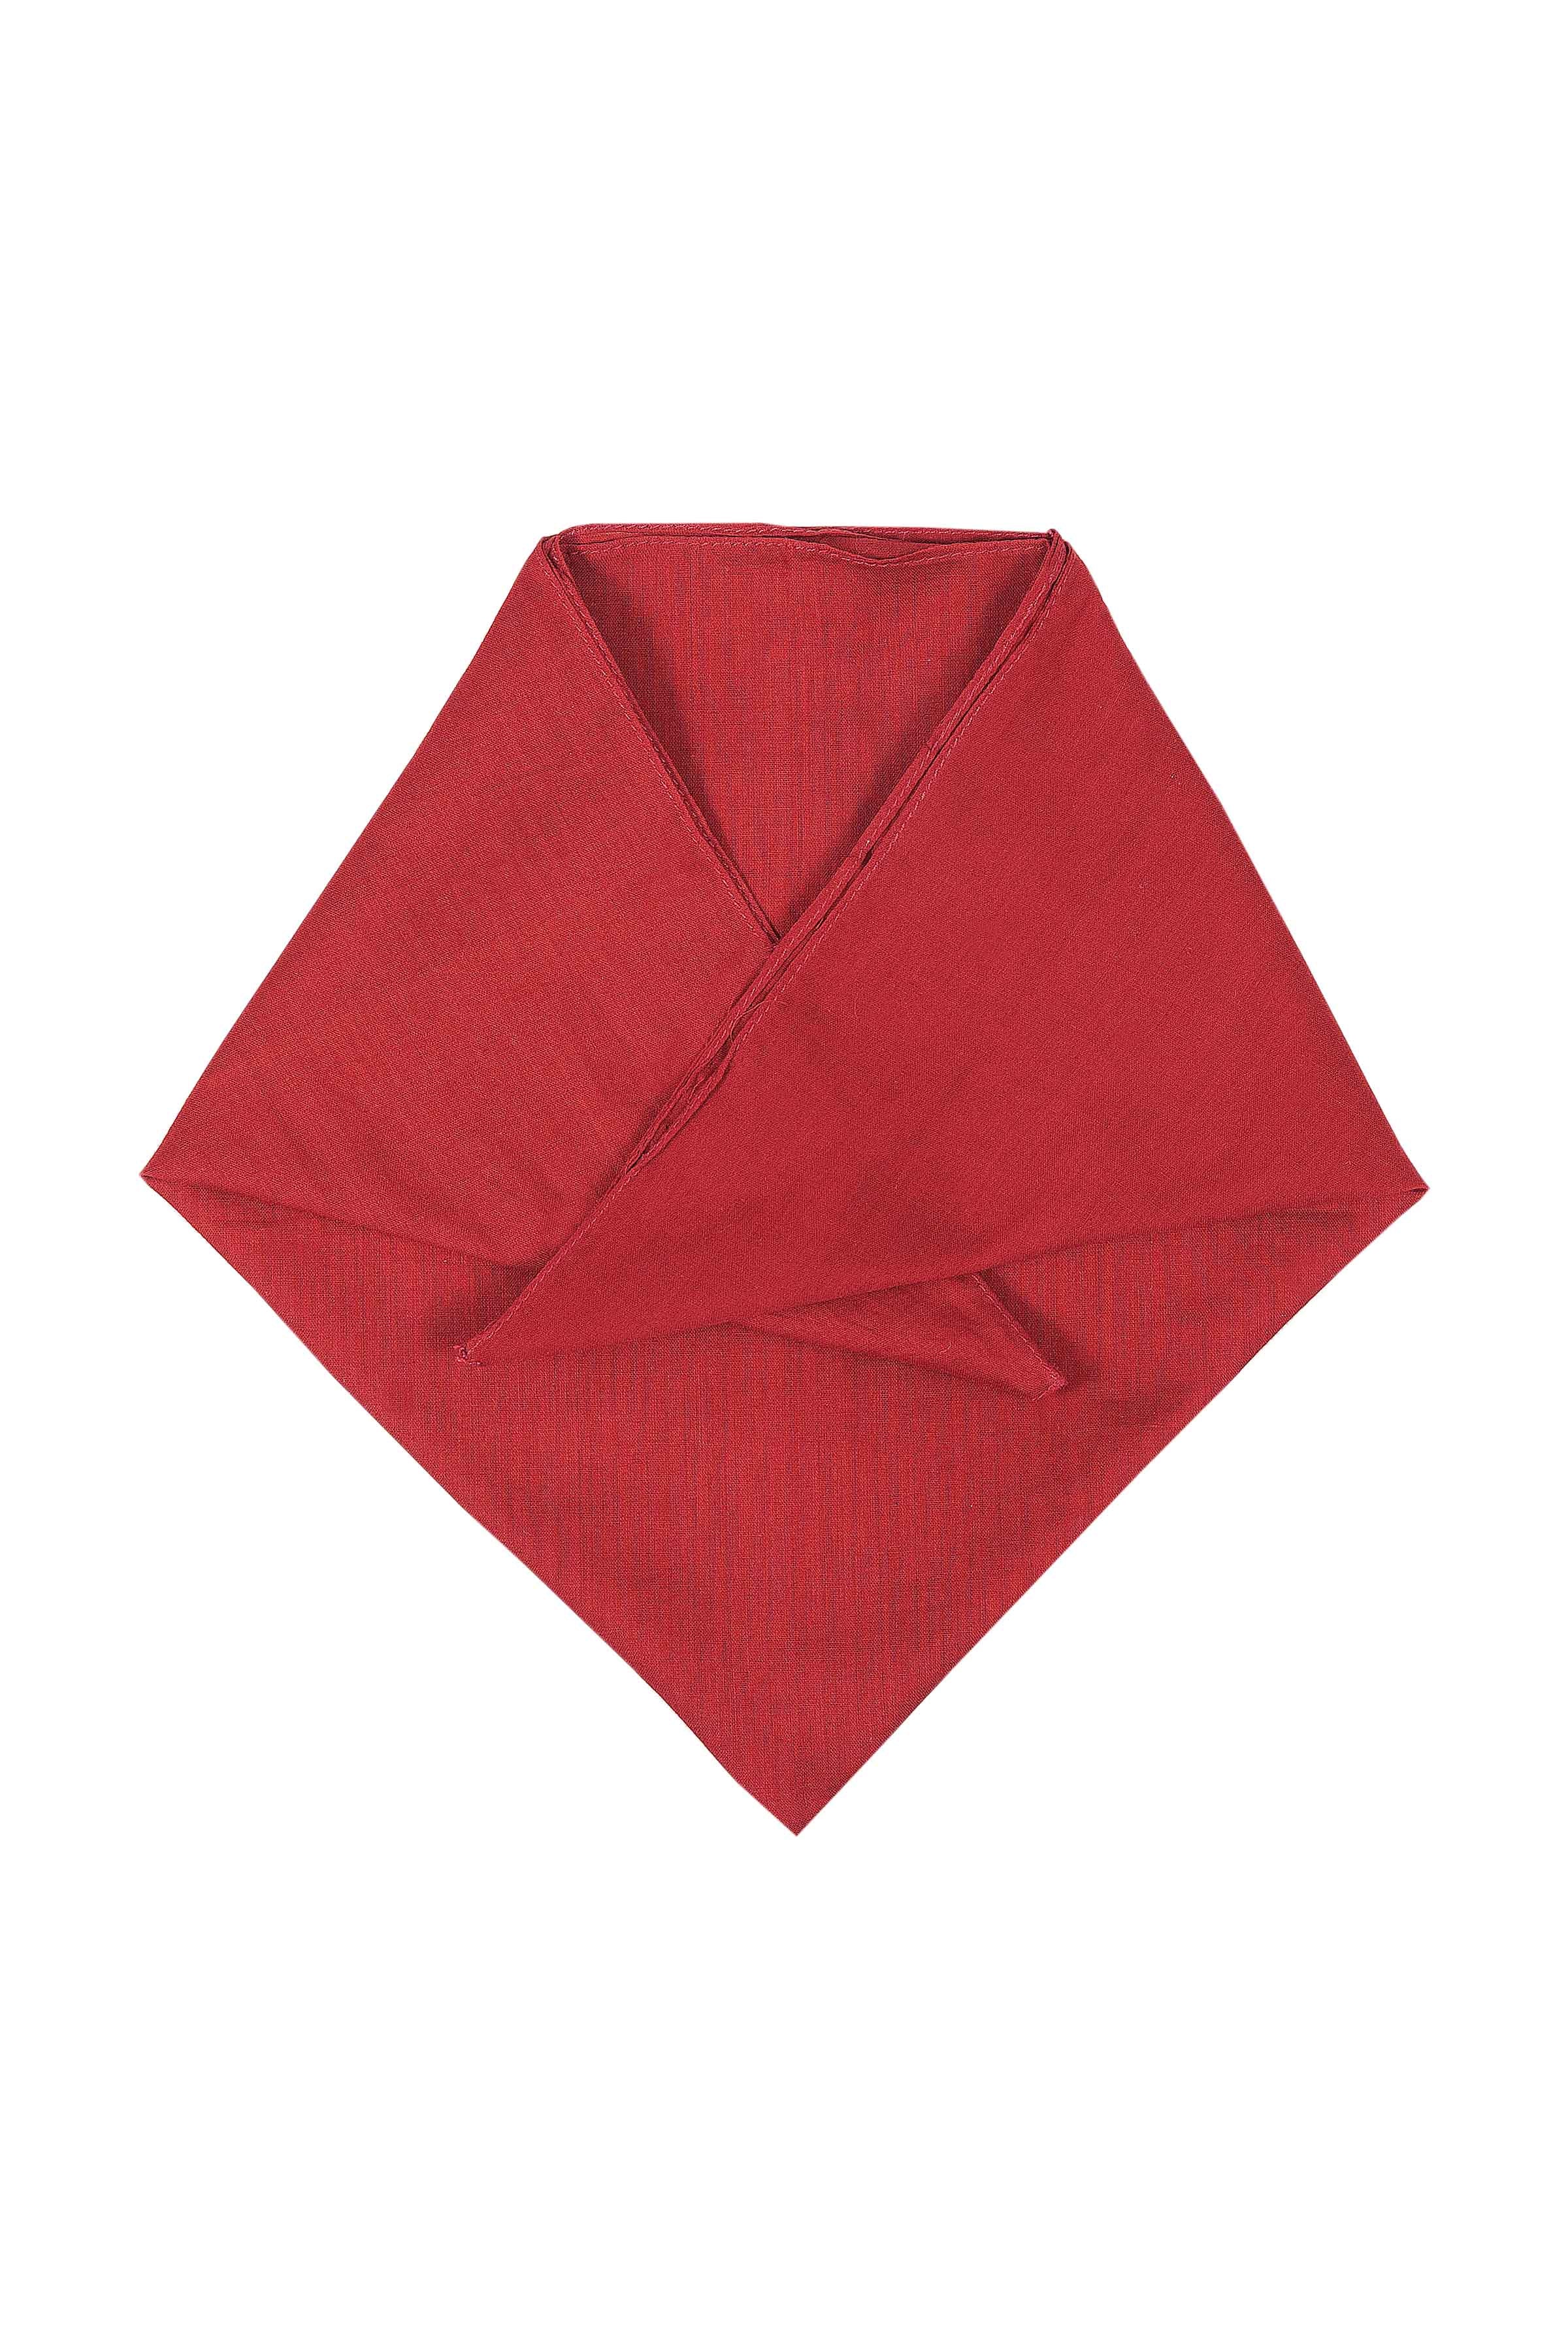 new cotton bandana-handkerchief maroon colour